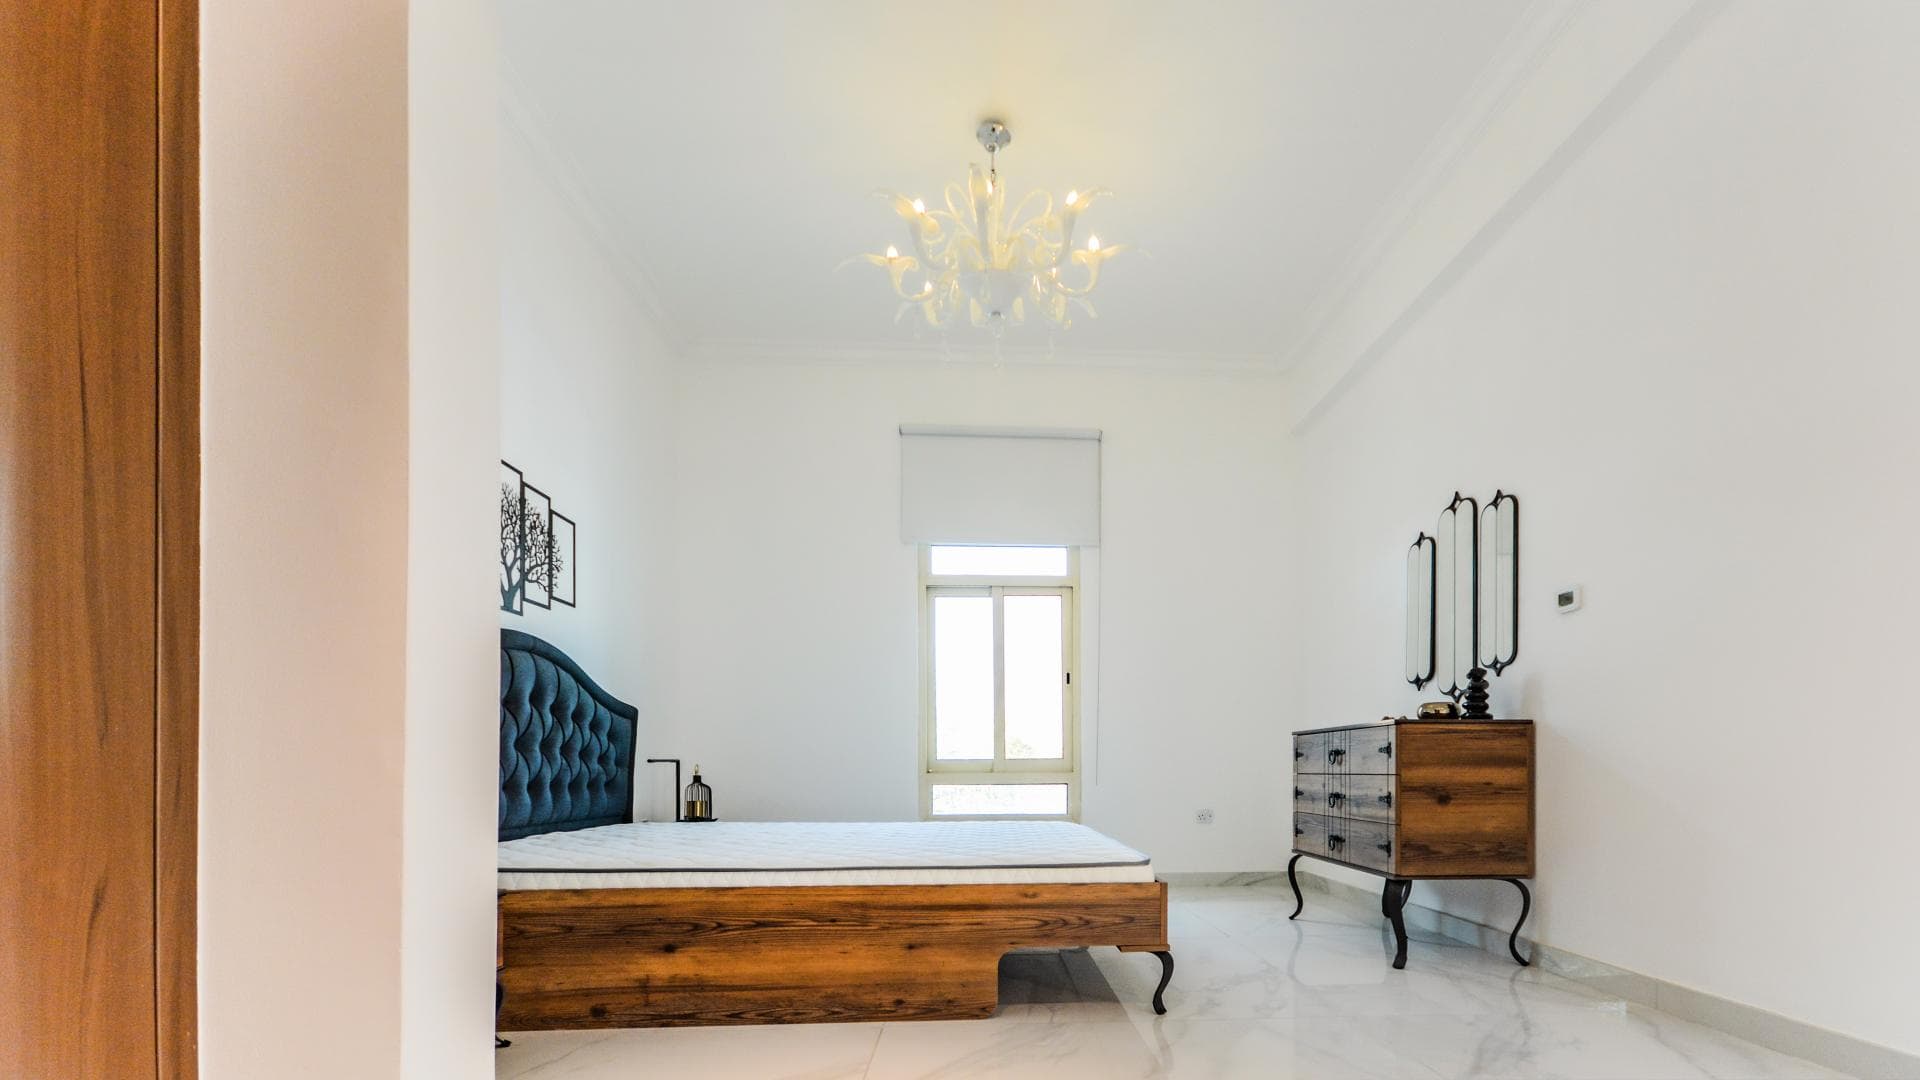 4 Bedroom Villa For Rent European Clusters Lp15271 22e0a497a4289e00.jpg